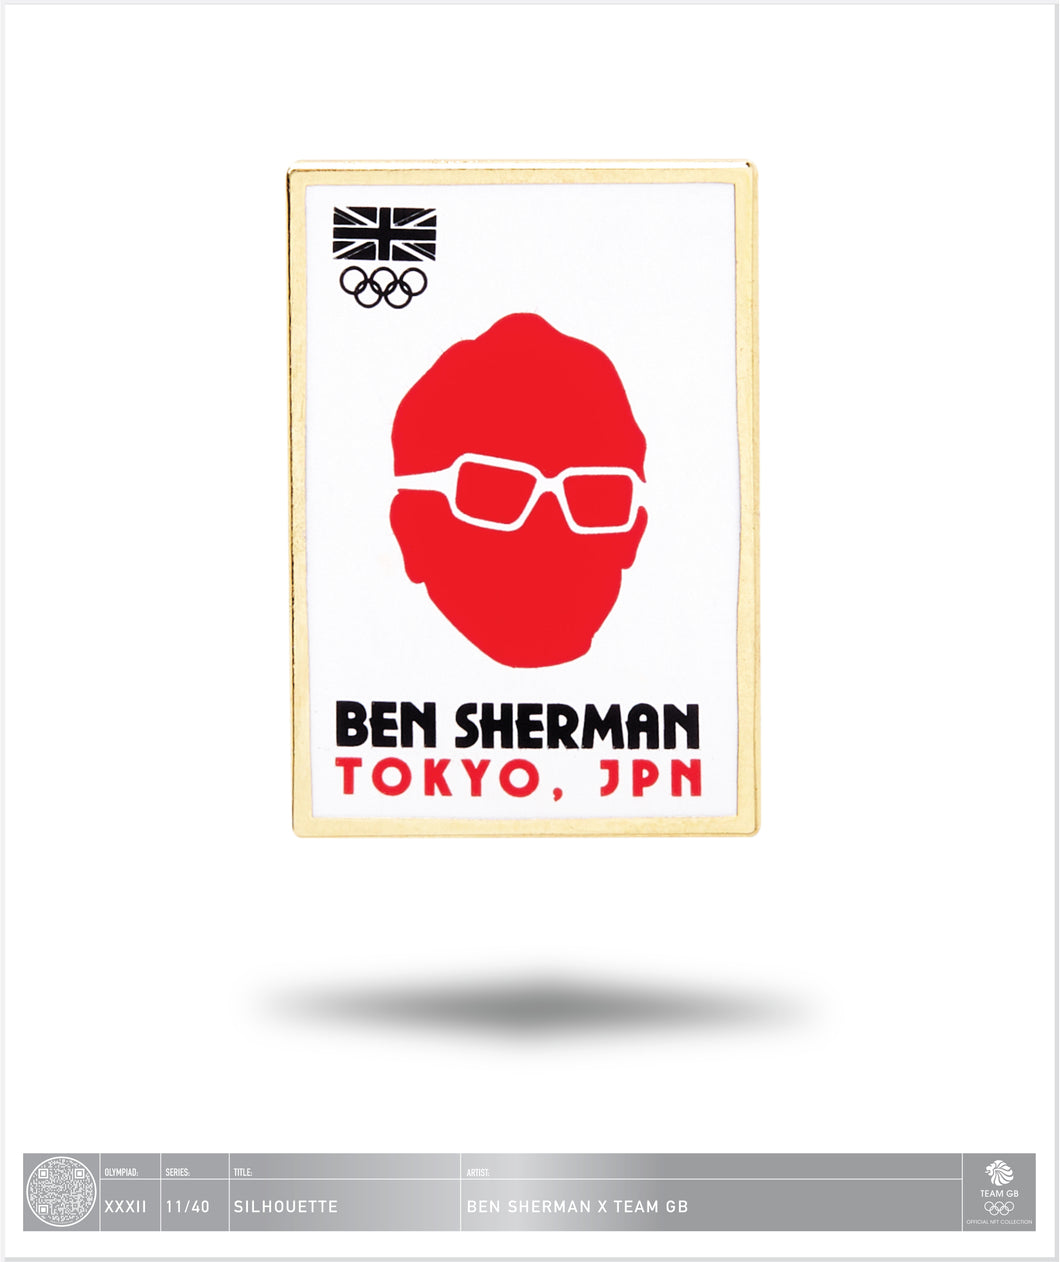 Ben Sherman Tokyo - Silhouette - 11 / 40